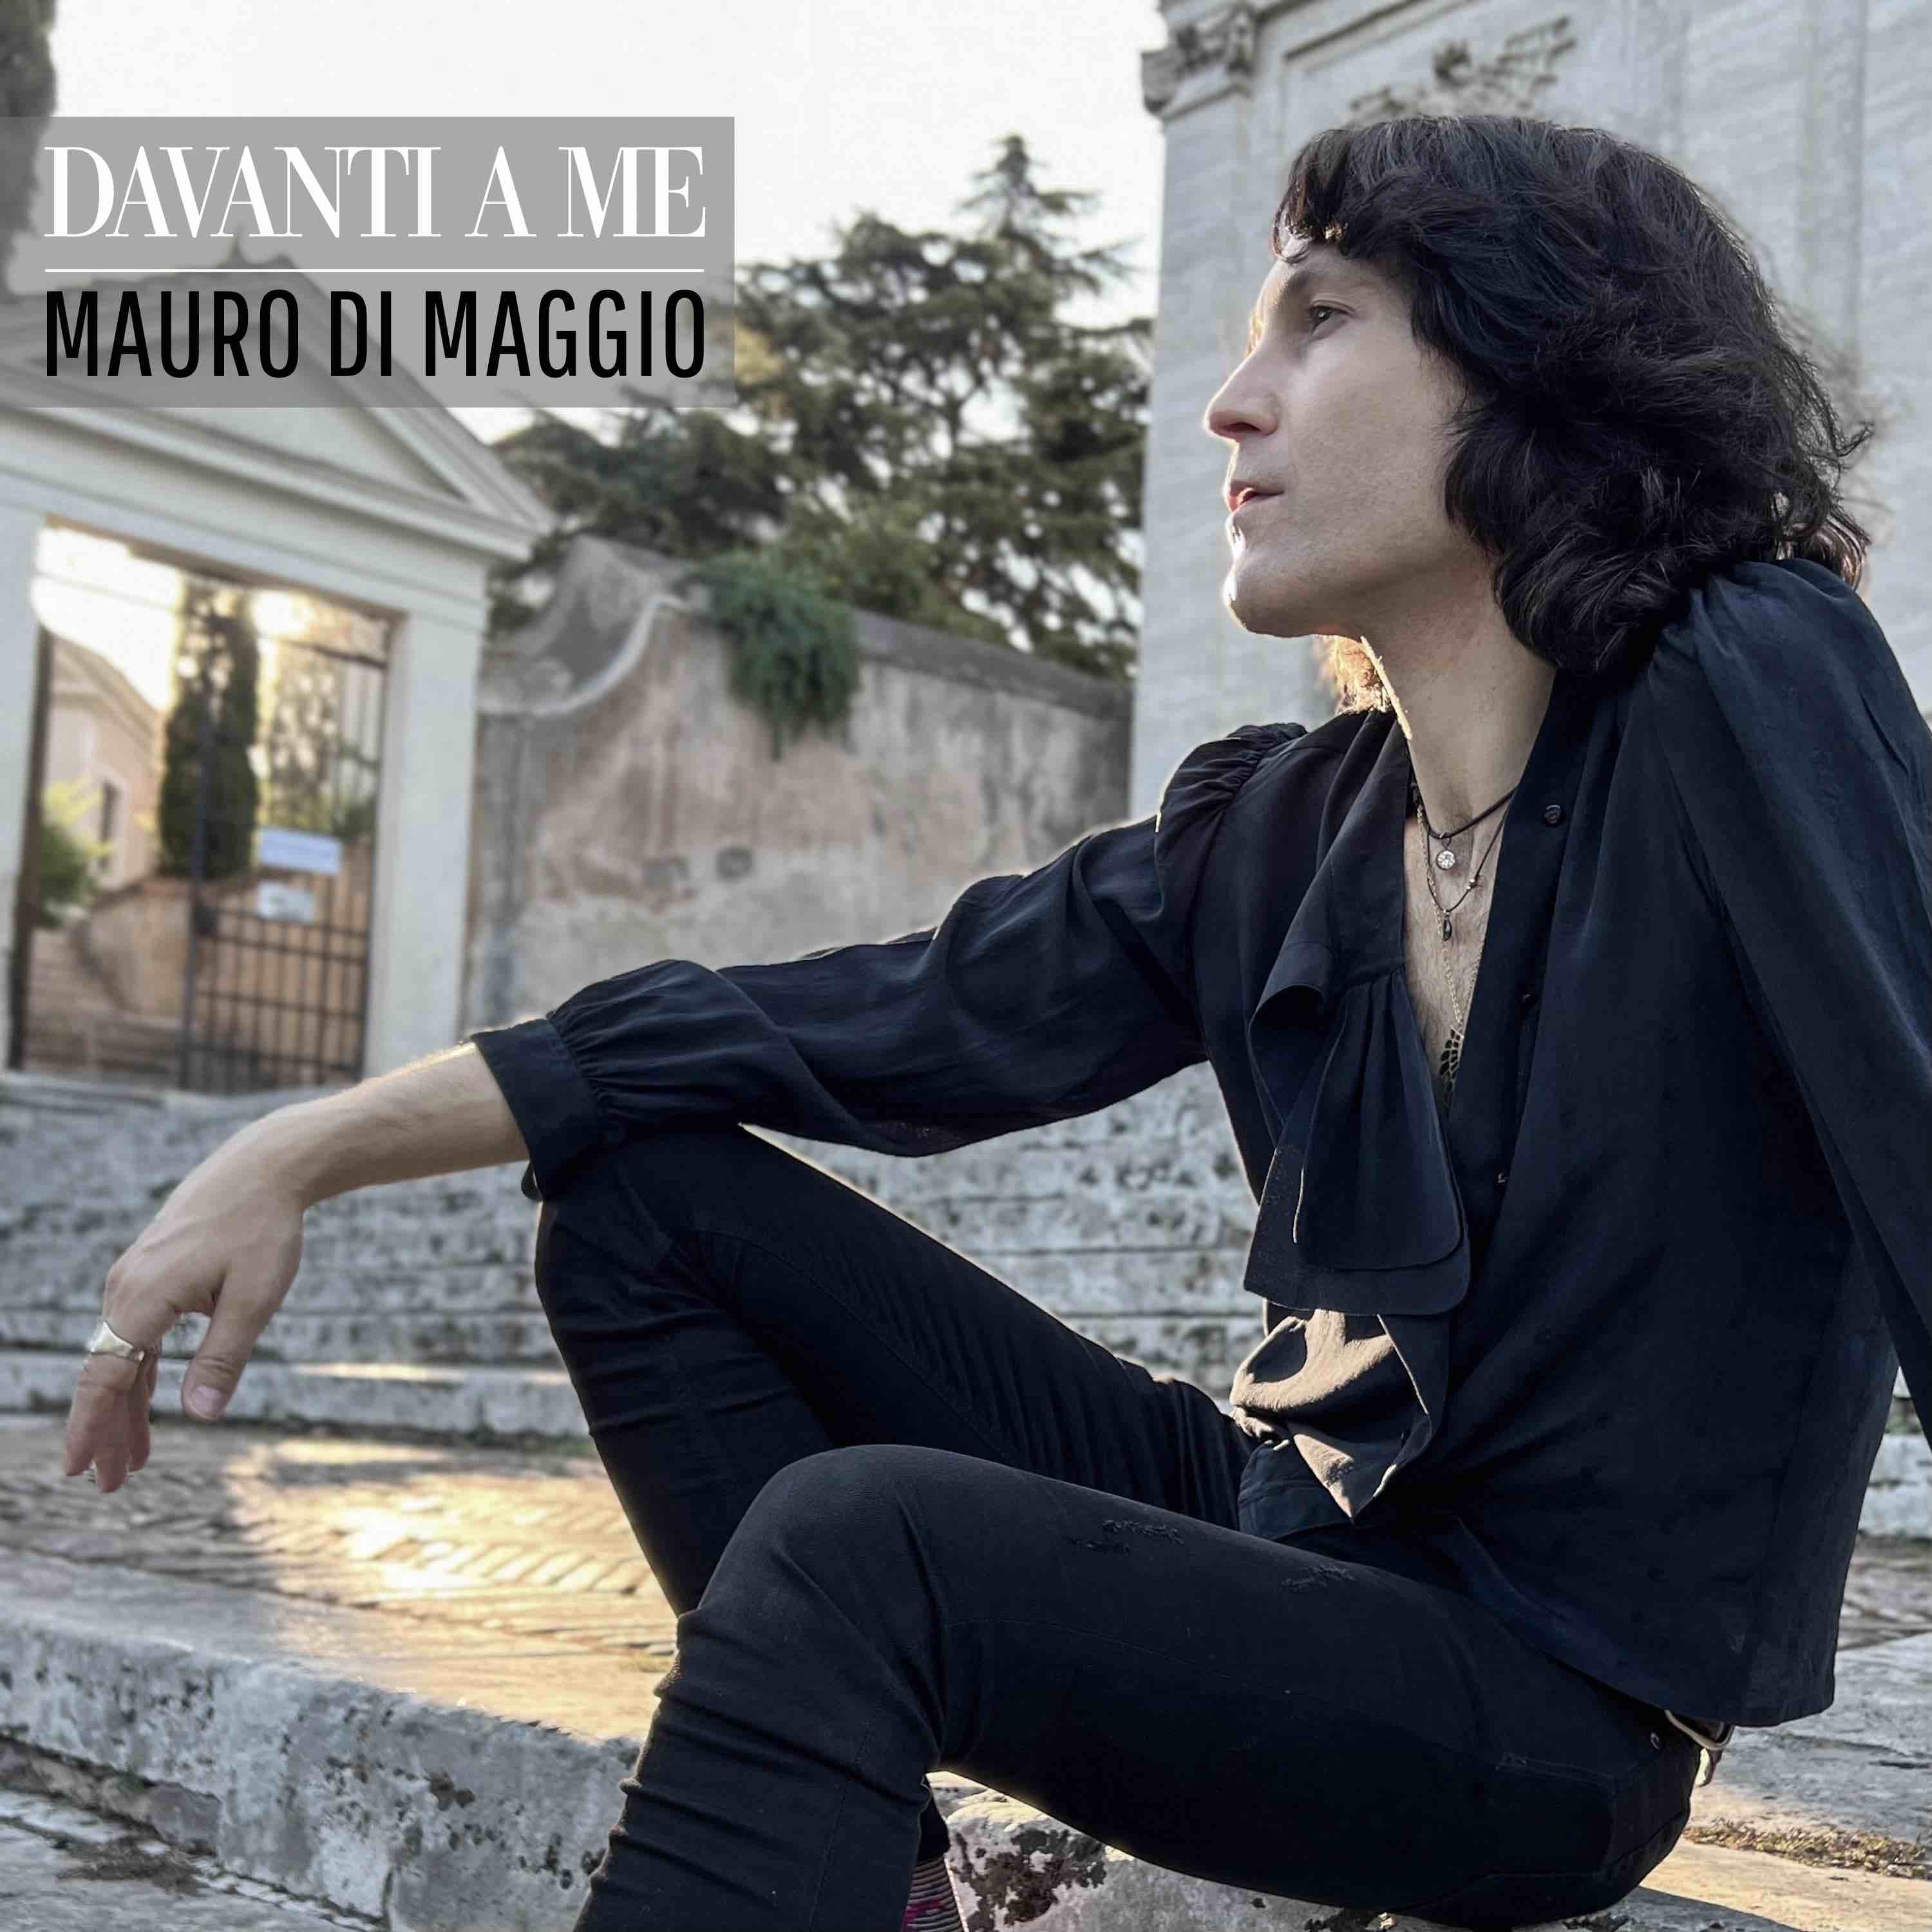 Foto 2 - “Davanti a me” è il nuovo singolo di Mauro Di Maggio